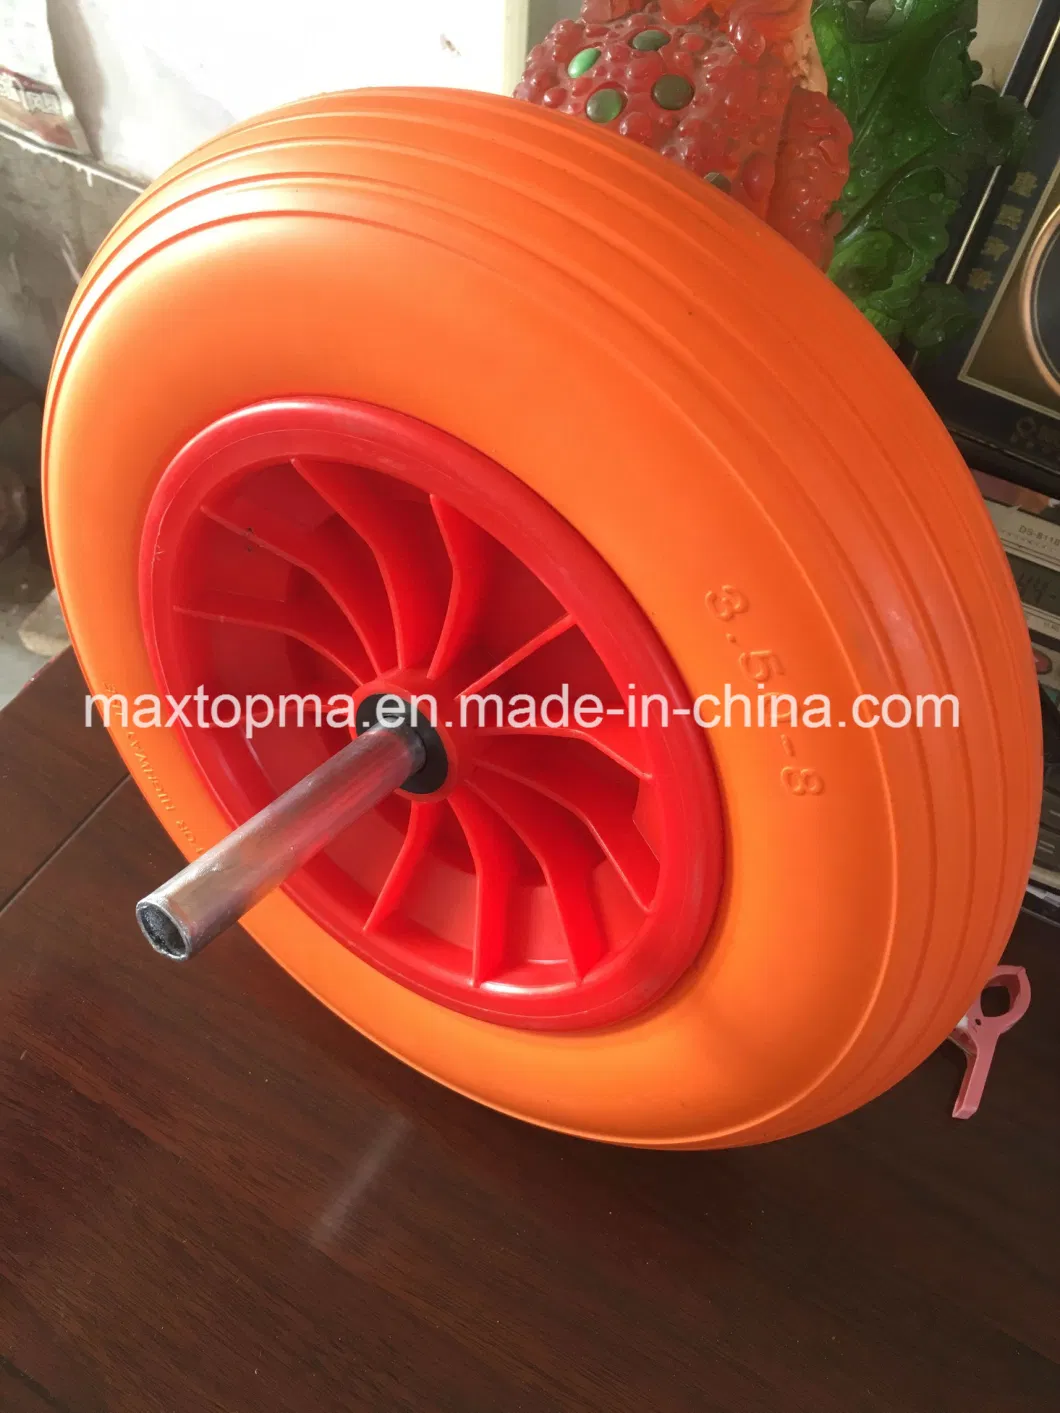 Maxtop Polyurethane Filling 13X500-6 PU Foam Flat Free Trolley Wheels